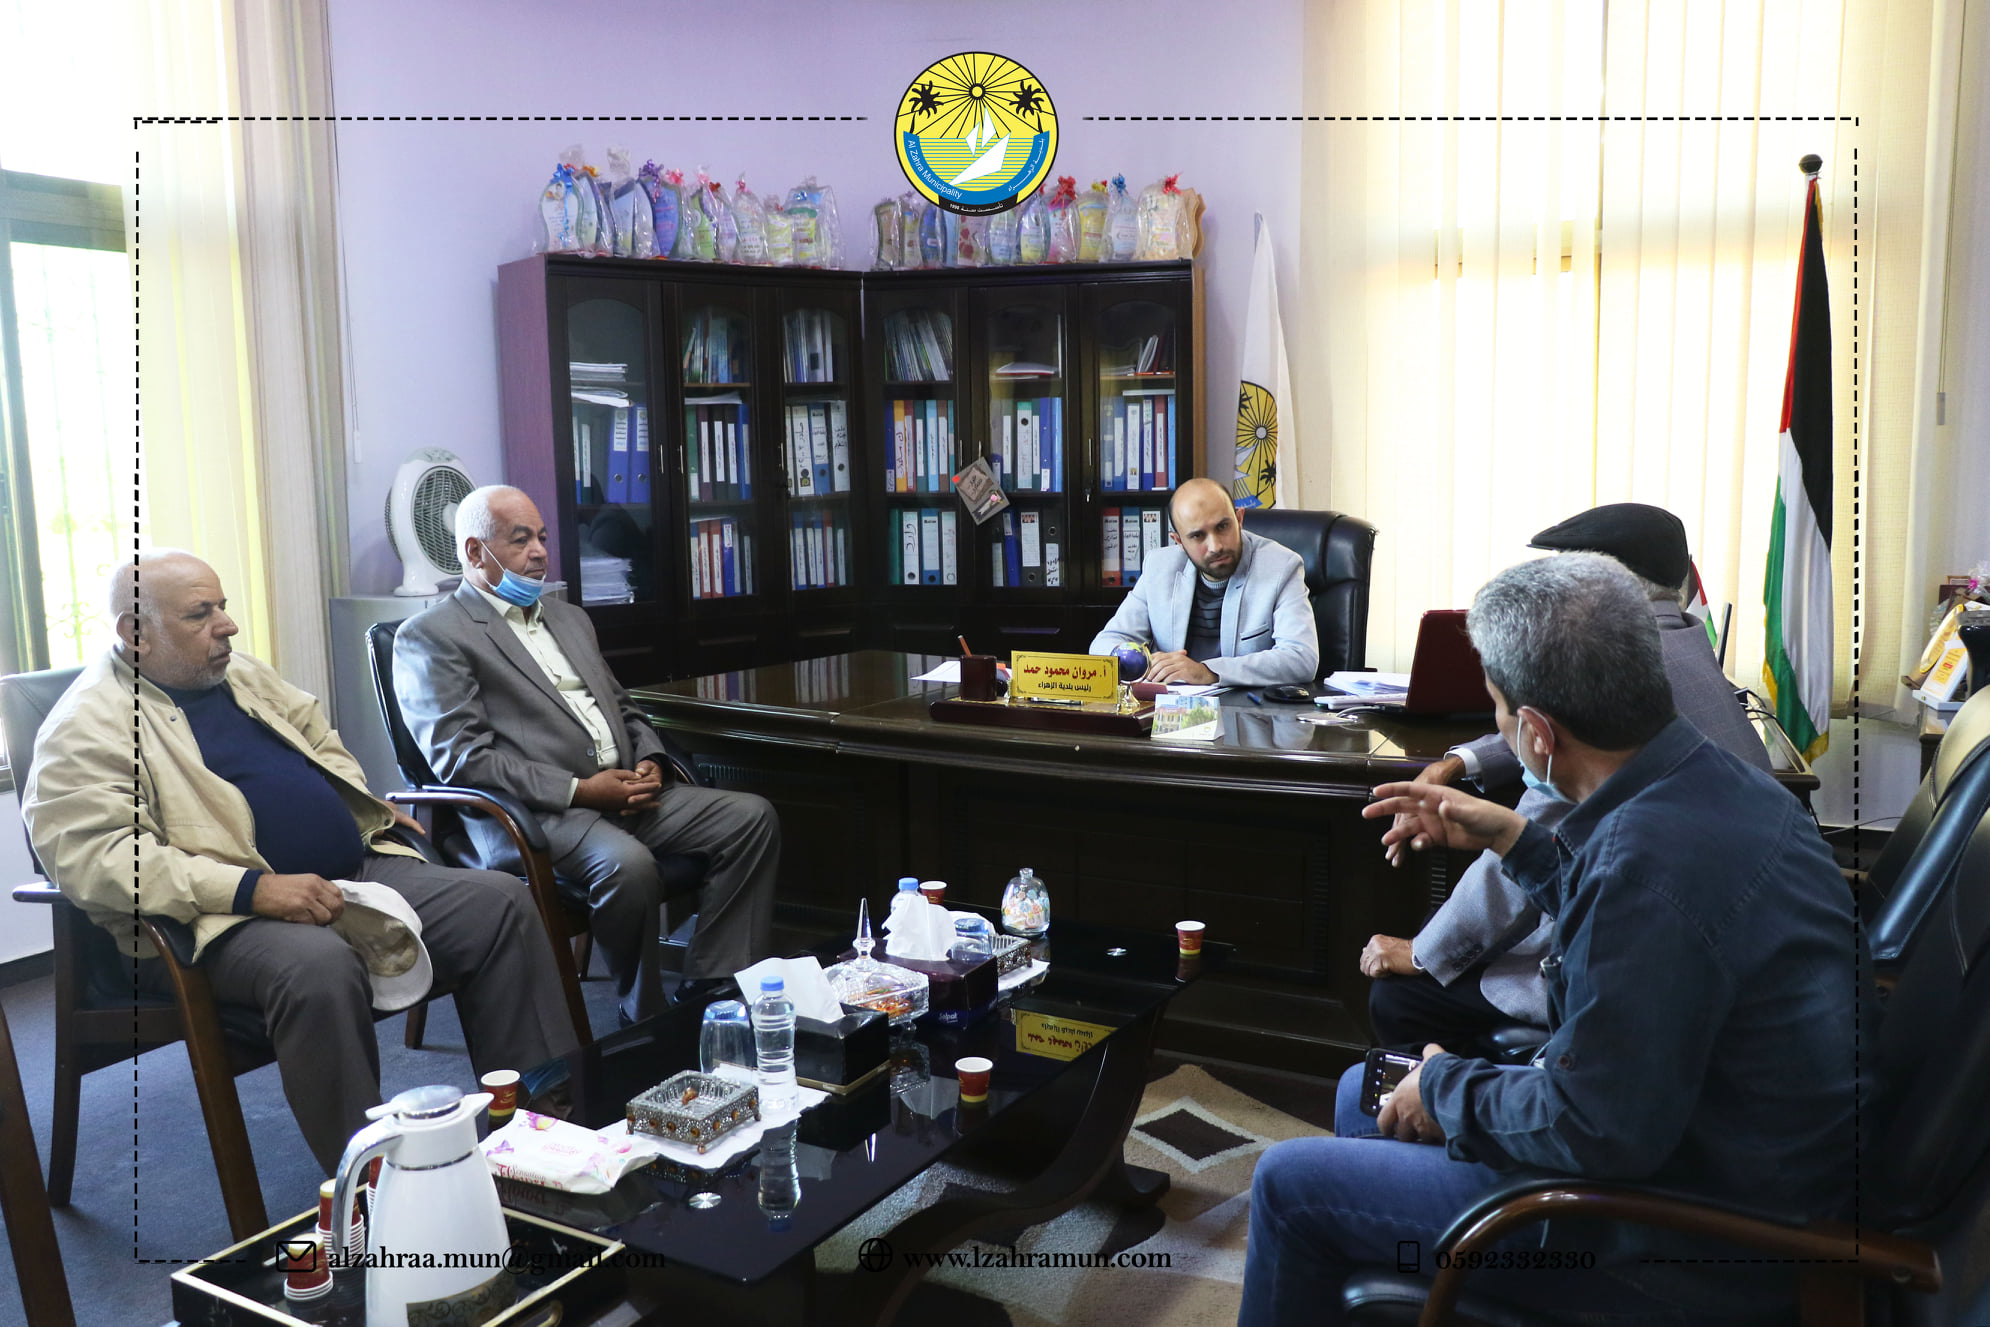 رئيس بلدية الزهراء أ.مروان حمد يبحث مع وفد من الجبهة الشعبية سبل التعاون والتنسيق لخدمة المواطنين.